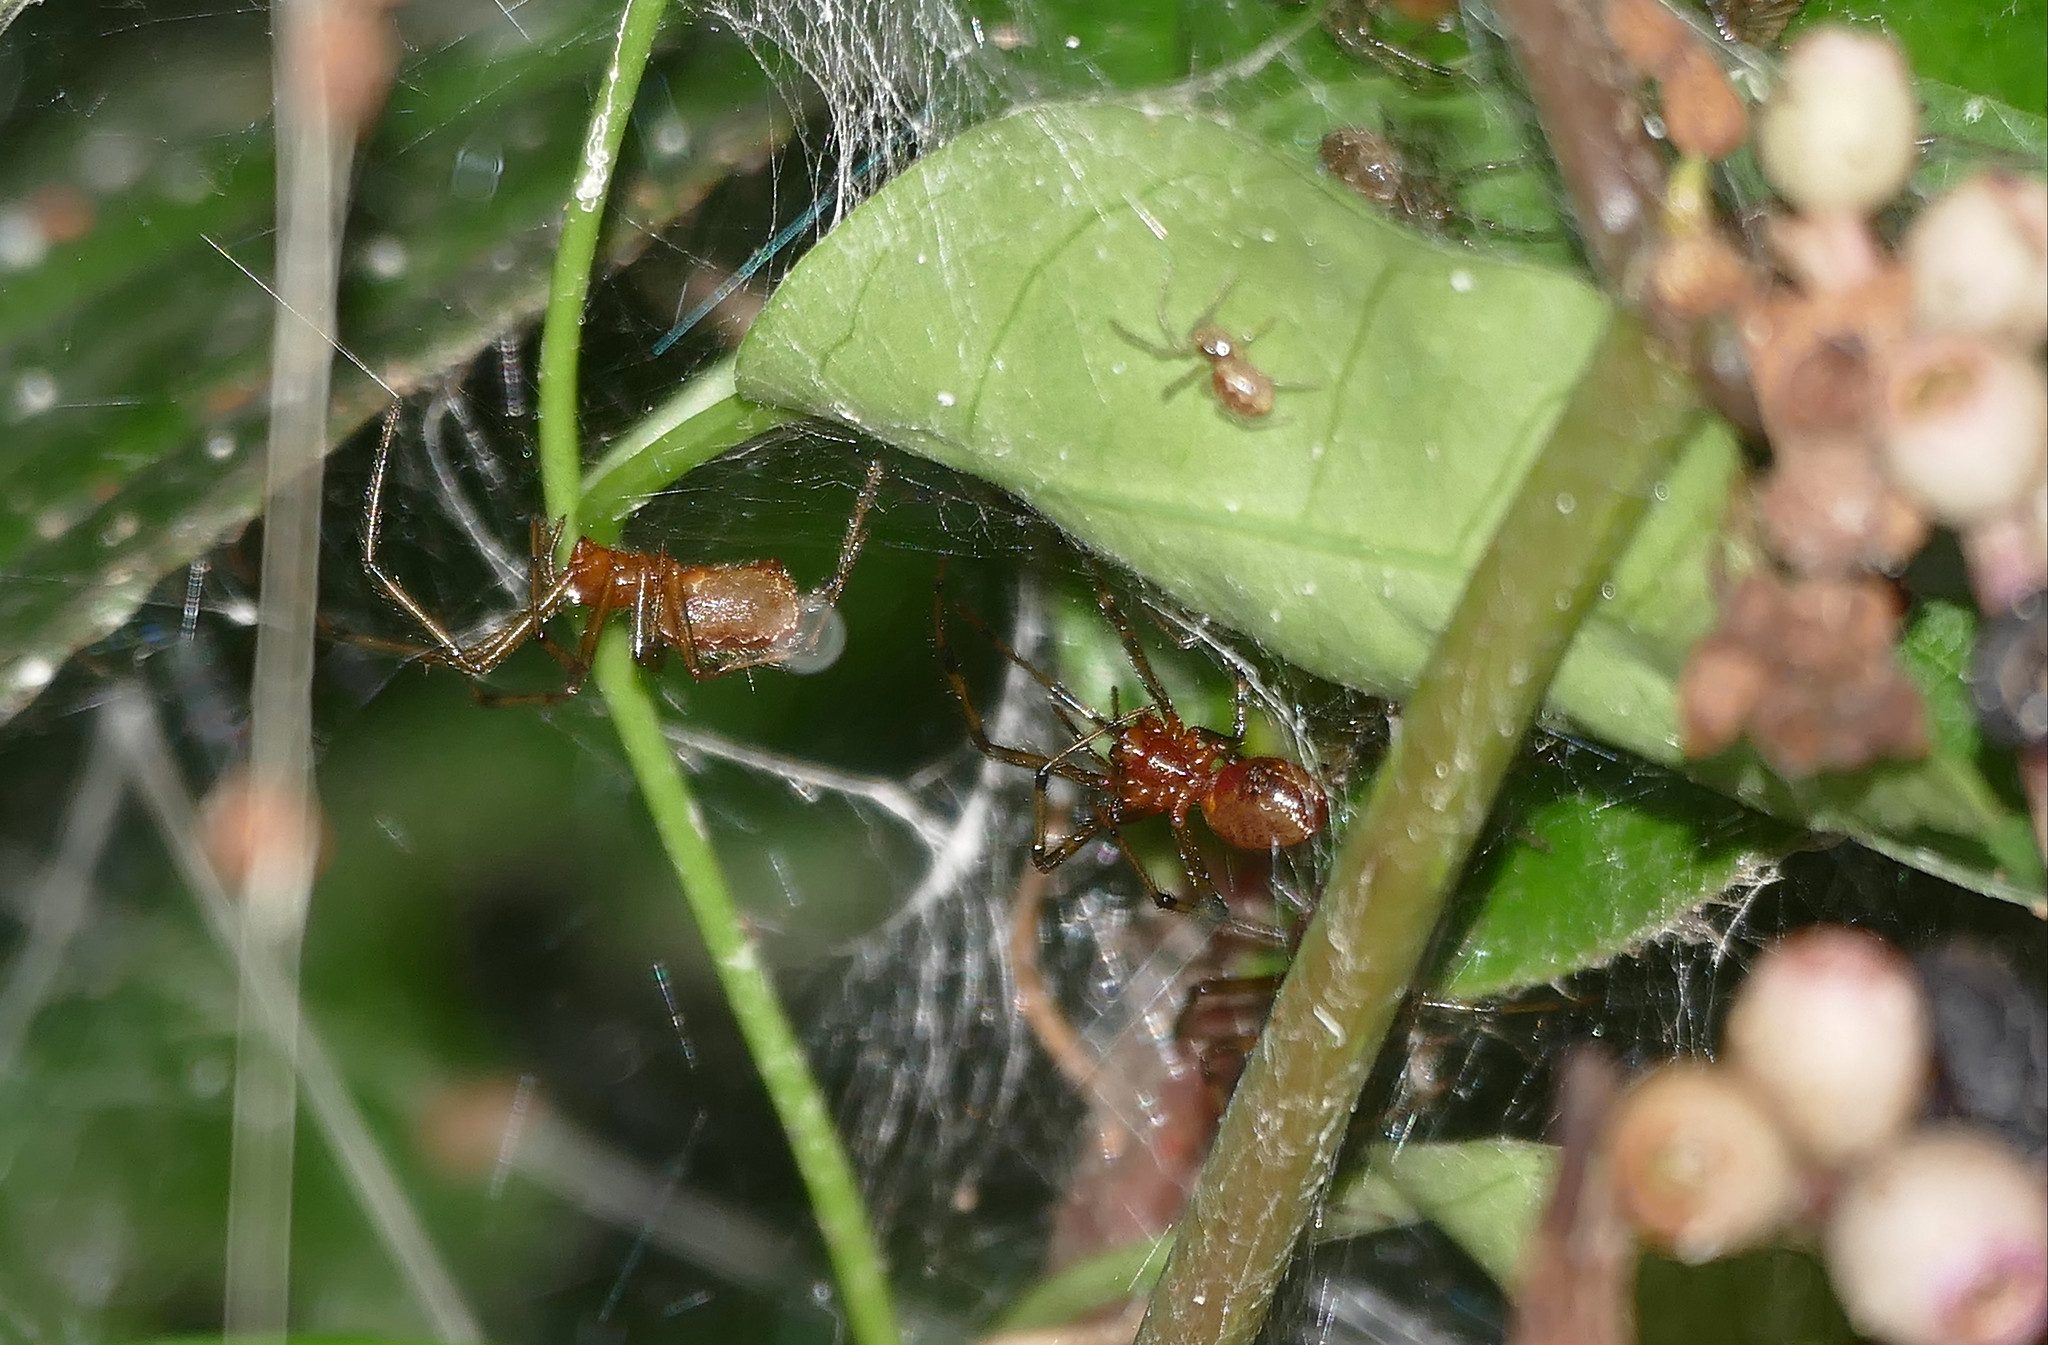 Social Spiders (Anelosimus eximius) in communal web